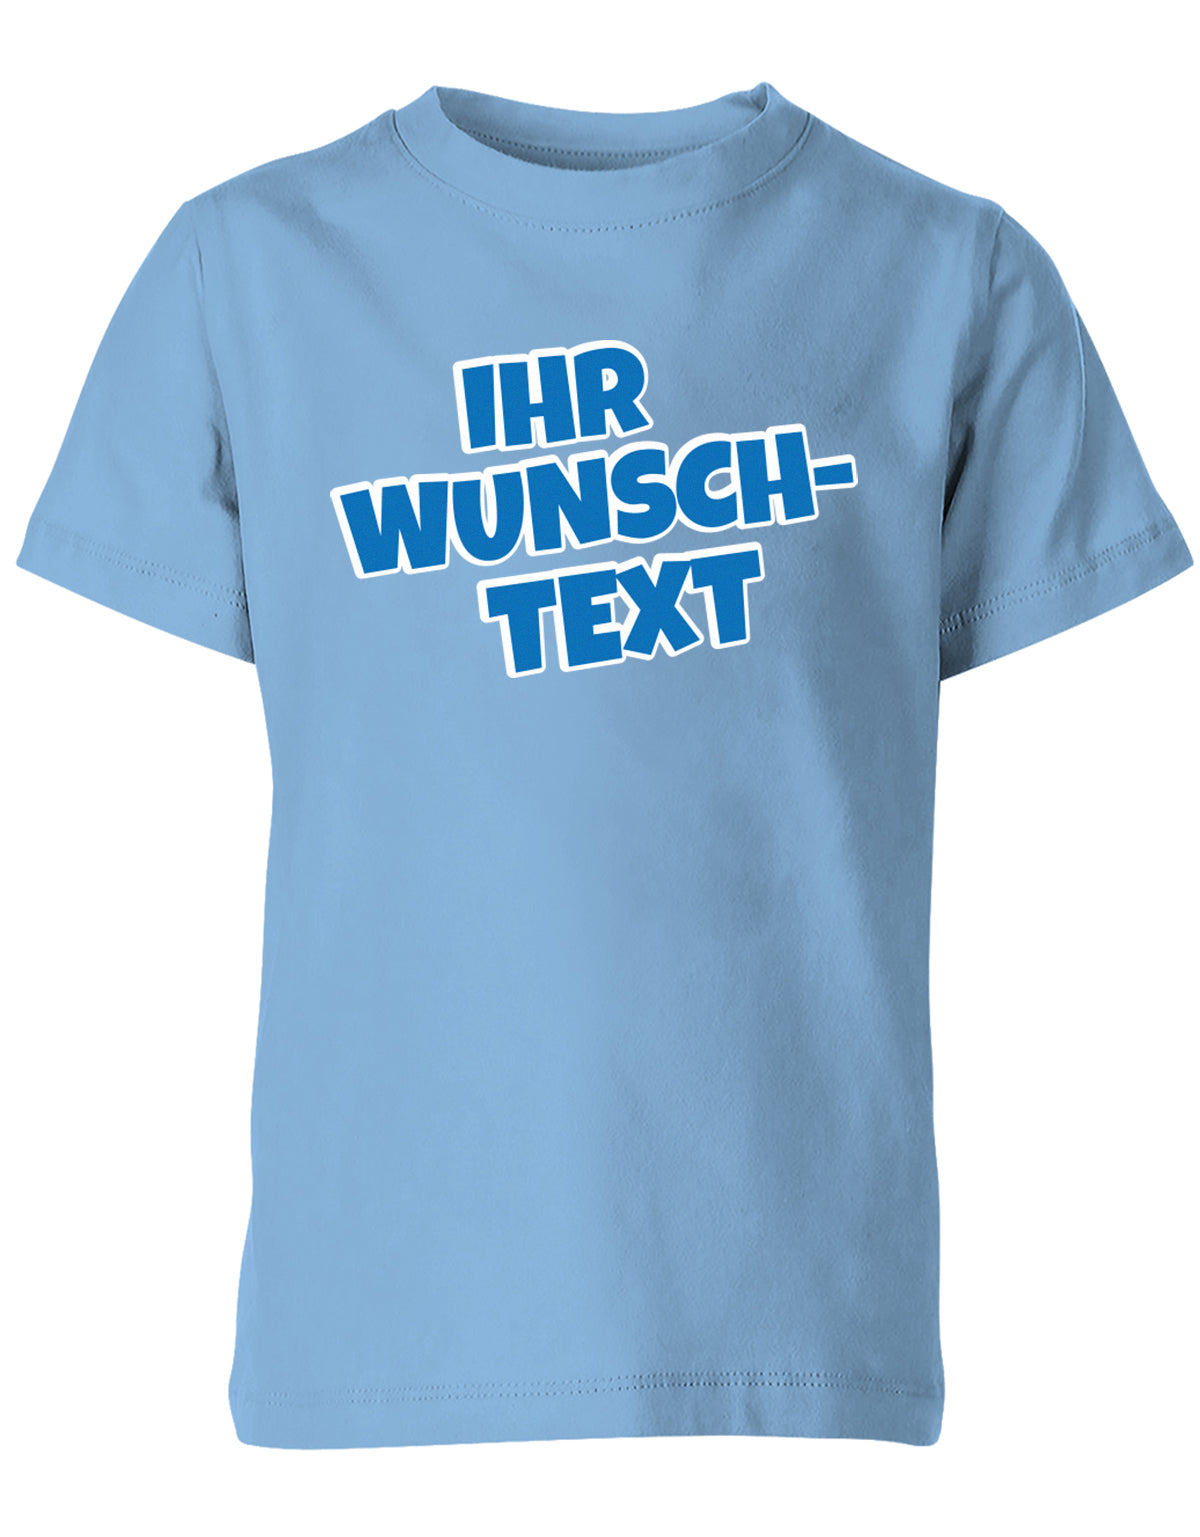 Kinder Tshirt mit Wunschtext.  Comic Schriftart mit weißer Umrandung.  Hellblau